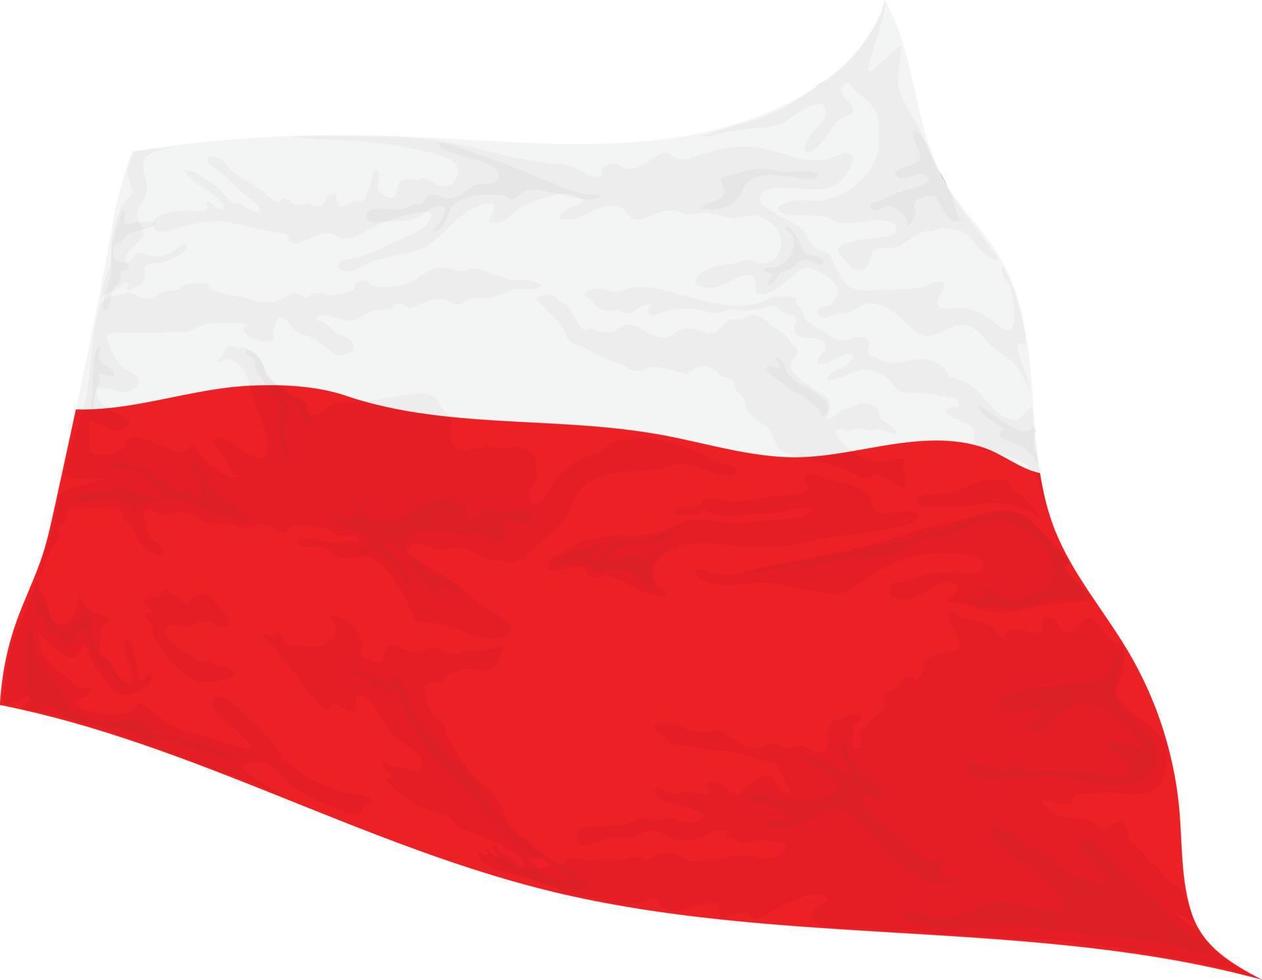 Vektor-Illustration der im Wind wiegenden polnischen Flagge vektor